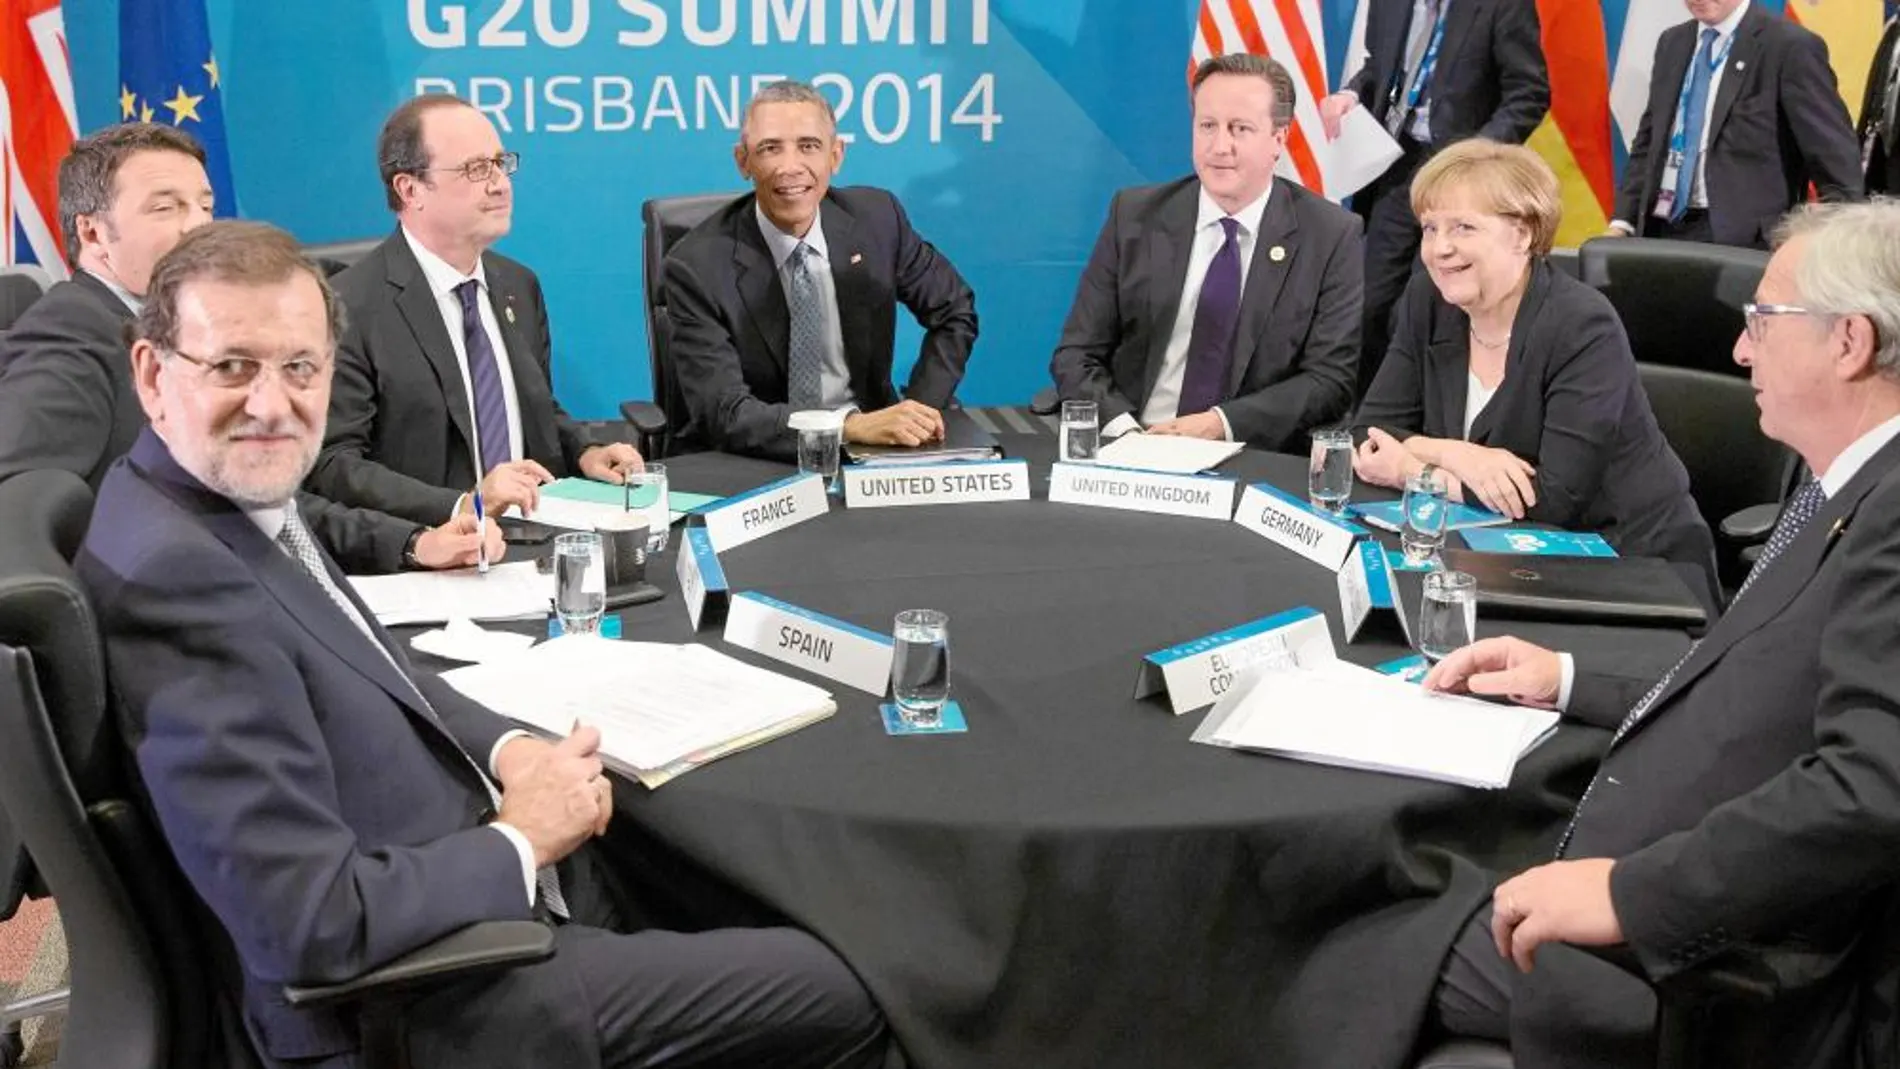 El presidente del Gobierno, Mariano Rajoy, junto a líderes mundiales como Obama, Merkel, Hollande o Cameron, en la cumbre del G-20 de 2014